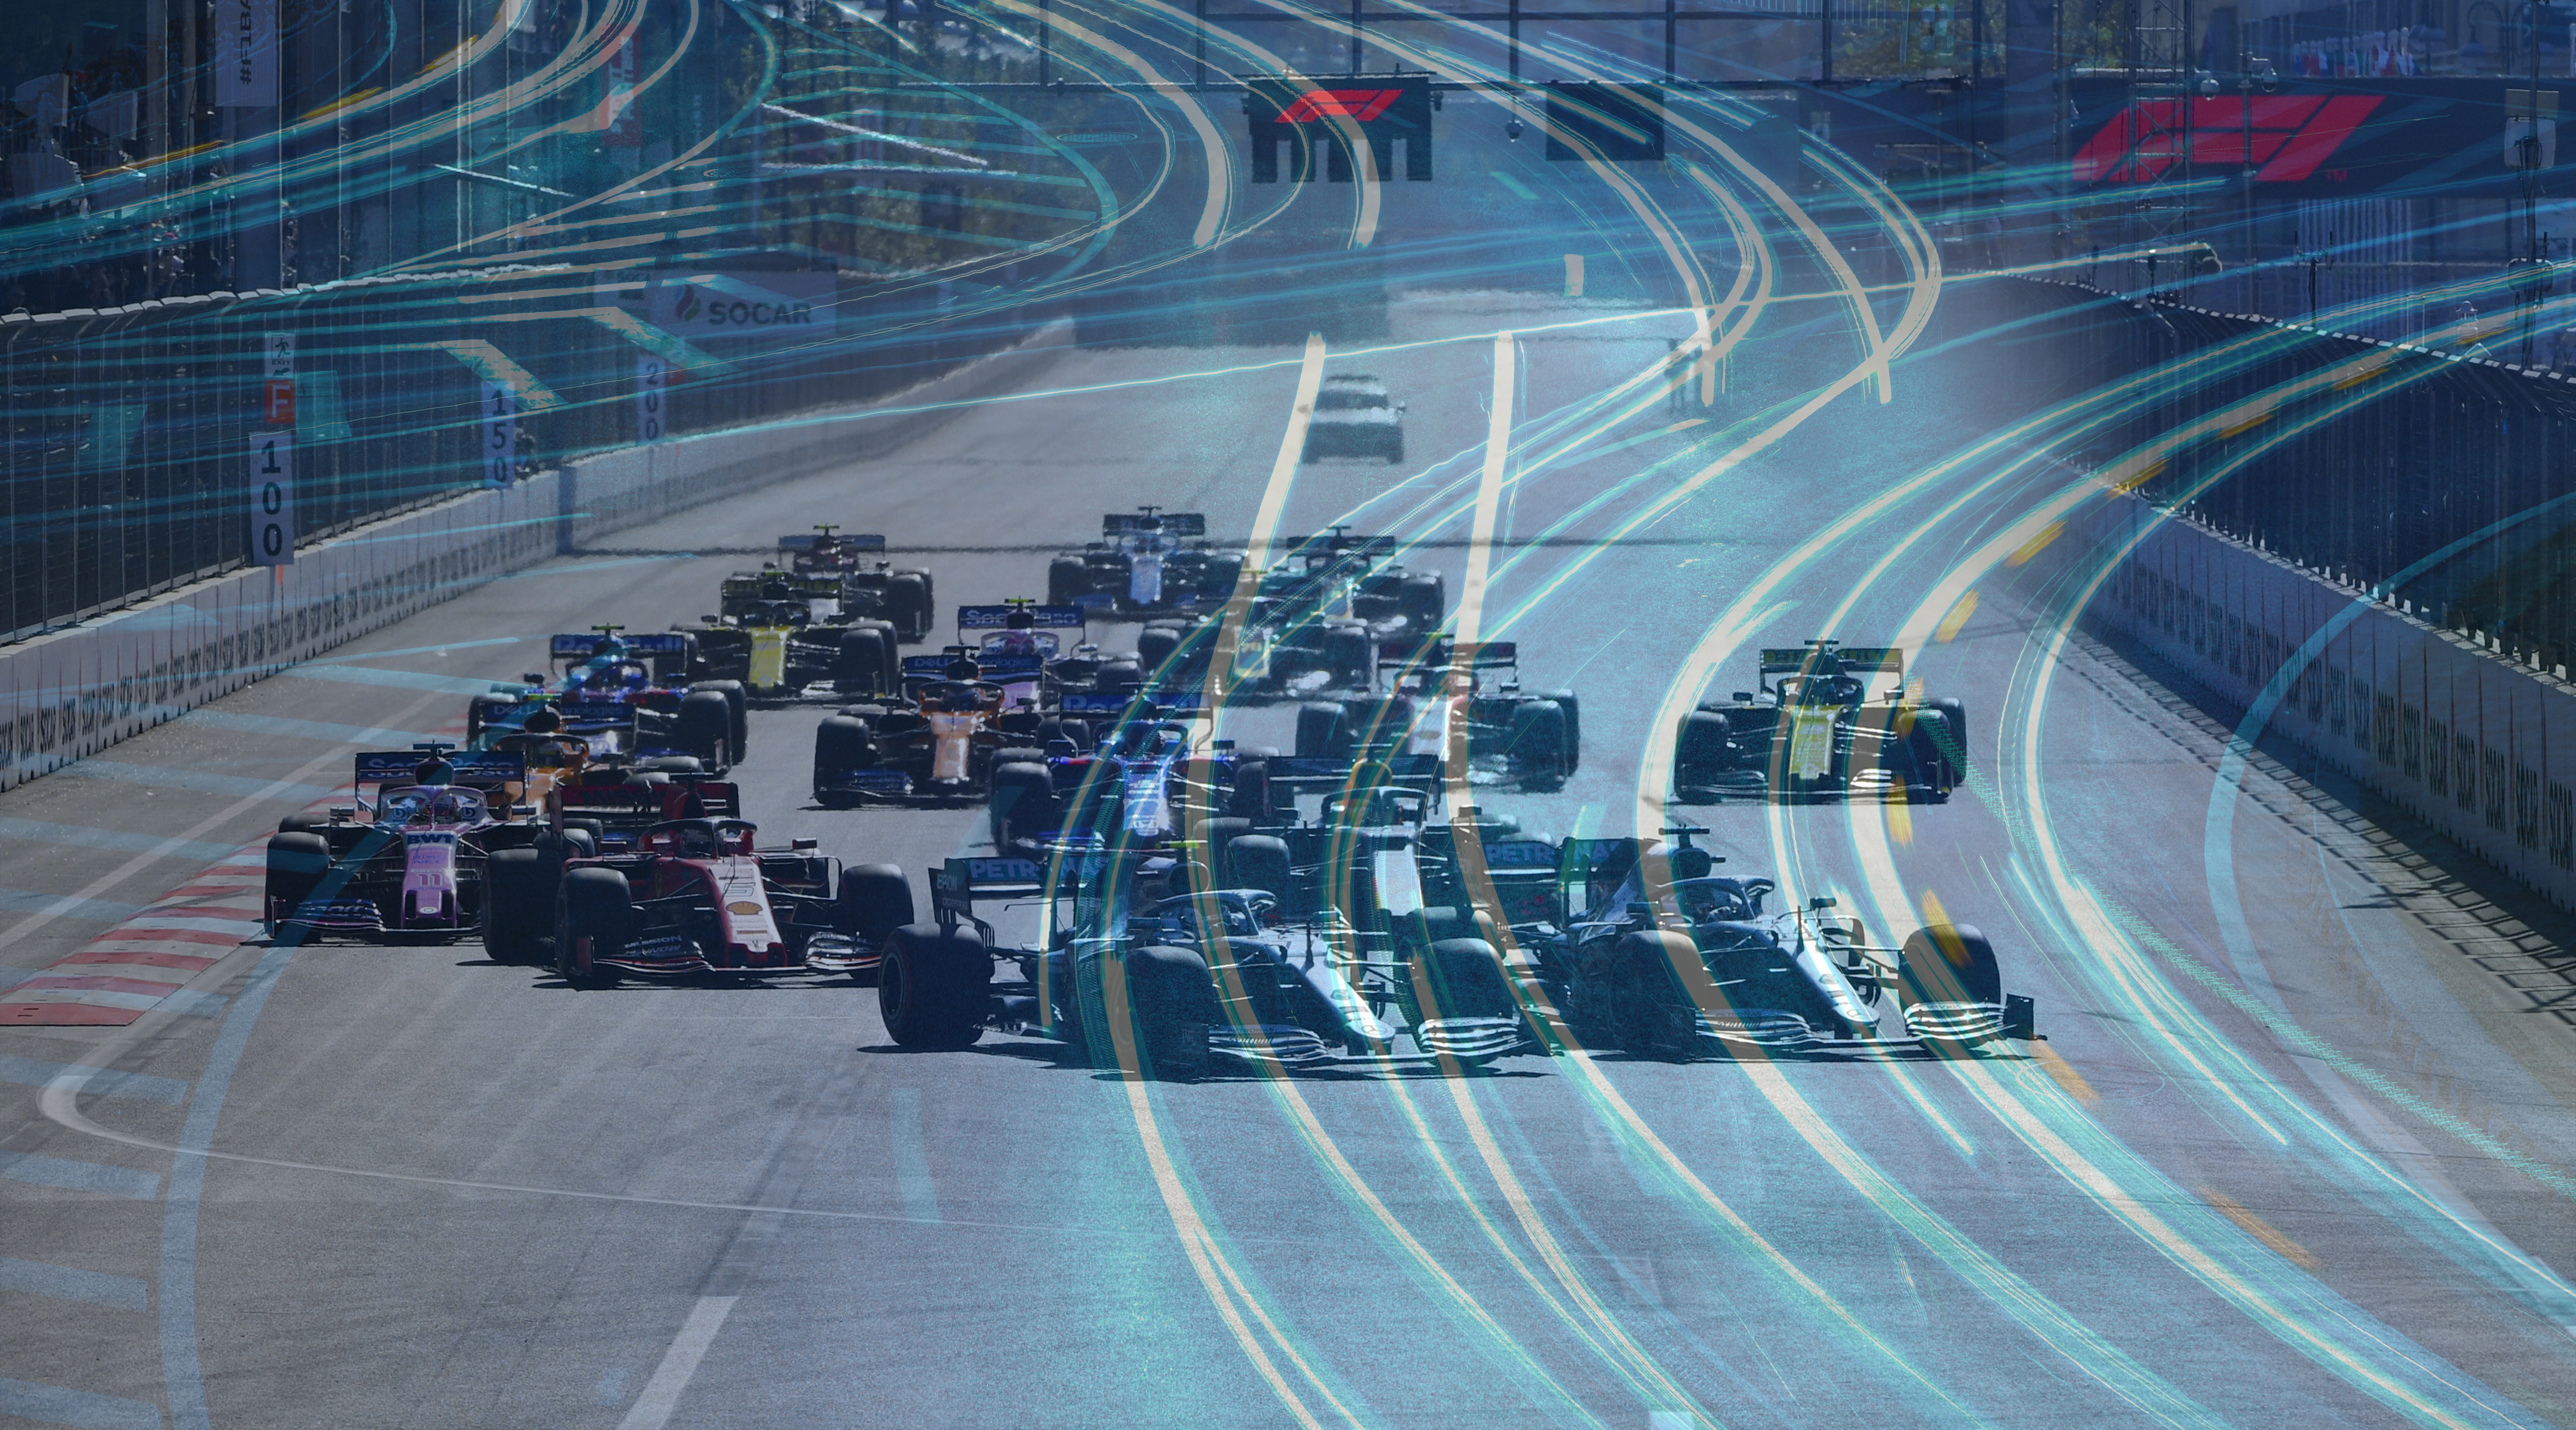 Katera F1 ekipa je najhitrejša … na spletu